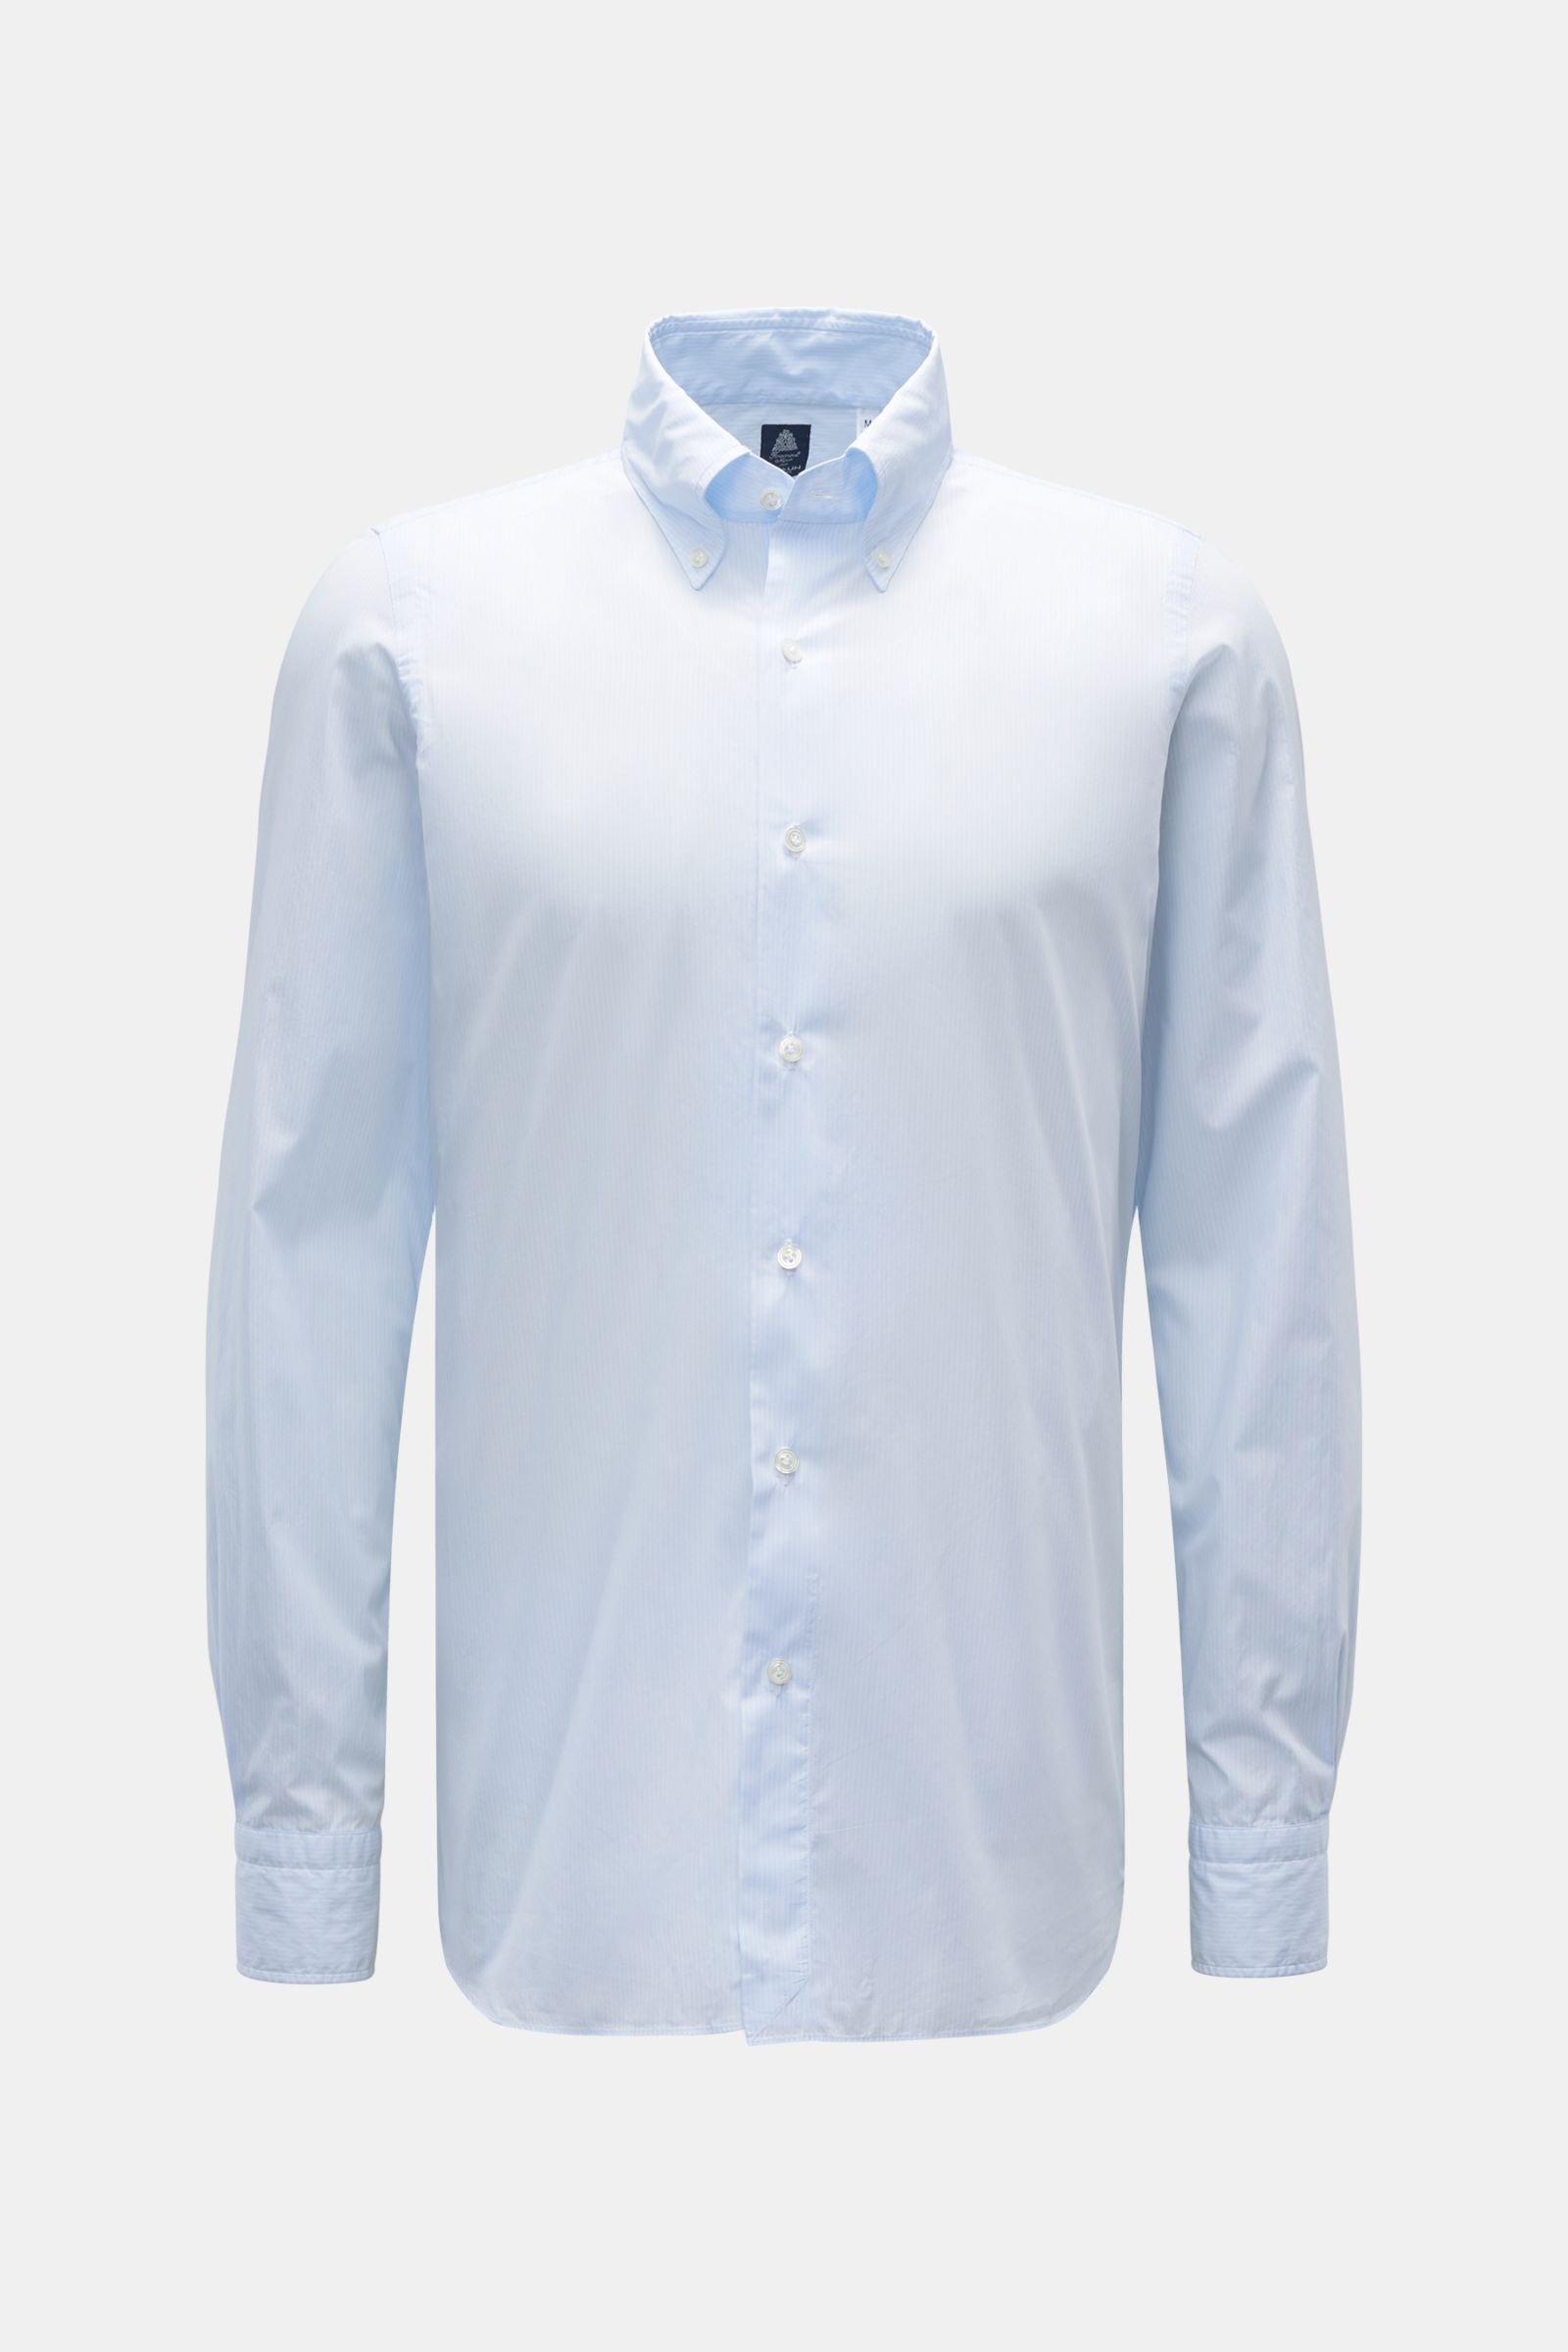 Casual shirt 'Lucio Napoli' button-down collar blue/white striped